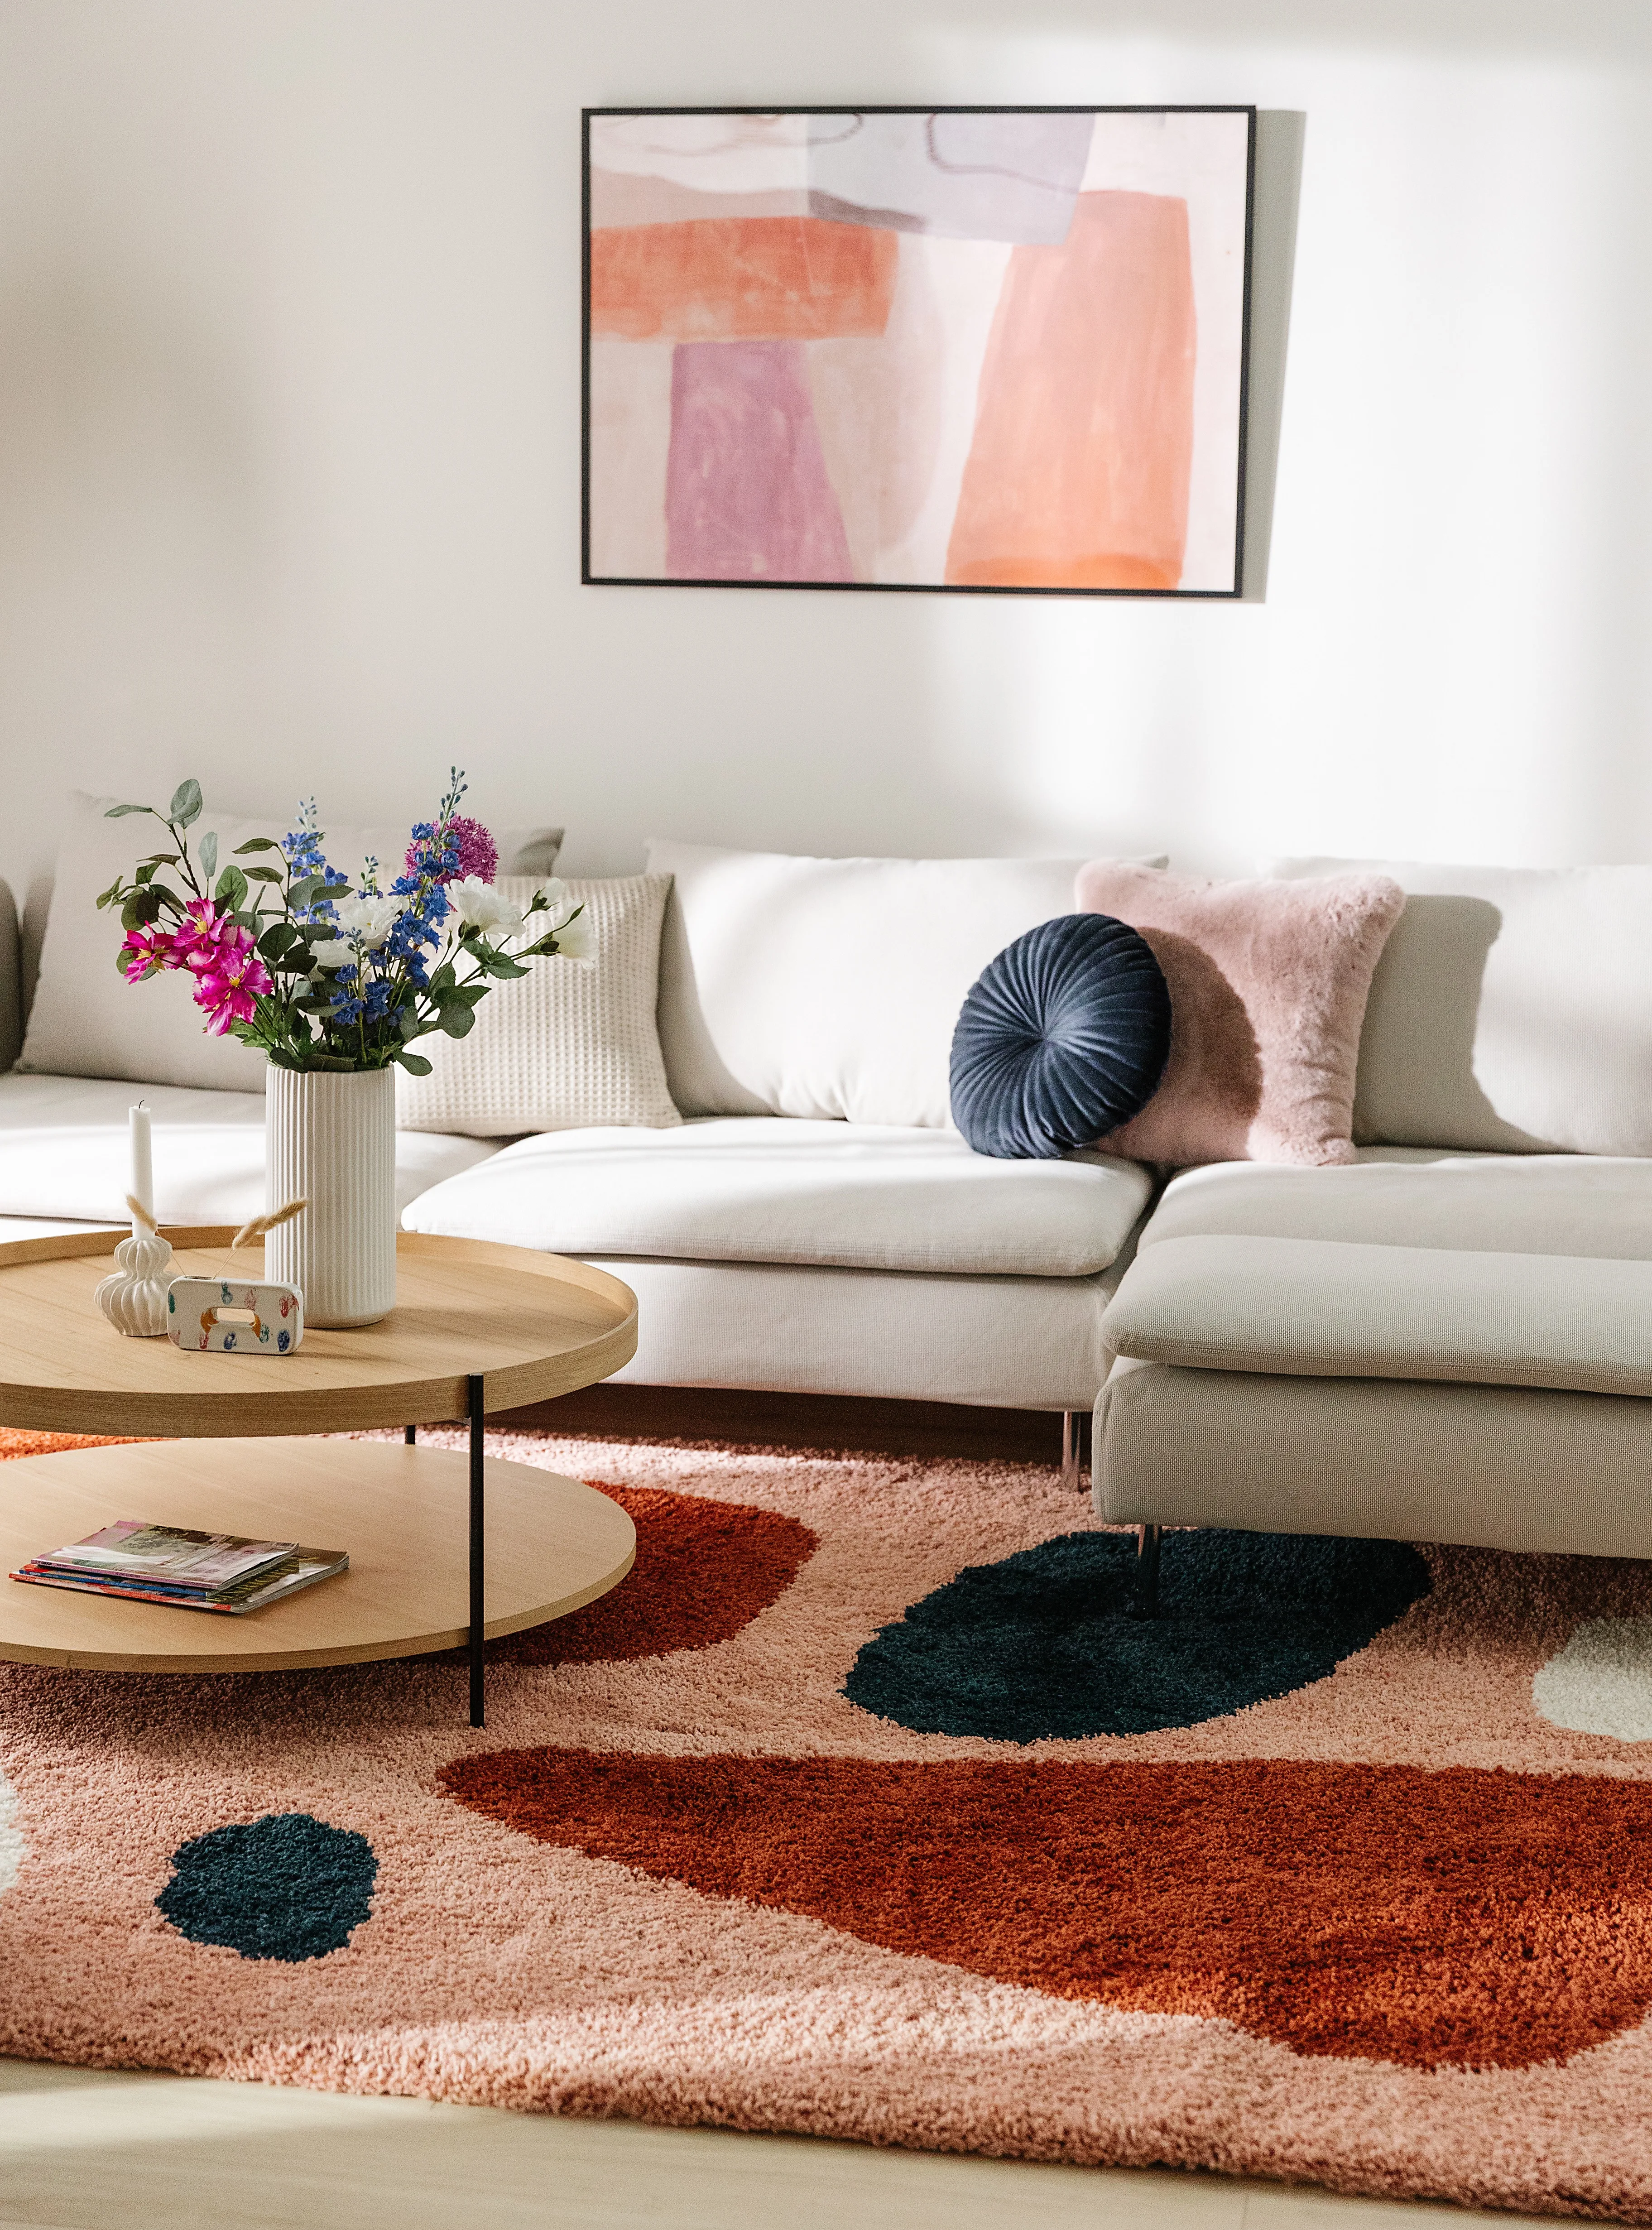 Wohnzimmereinrichtung mit farbenfrohen Dekoelementen wie Kissen, Teppich und Bild in Rot, Rosa, Lila und Orange und einer schlichten Couch in Creme